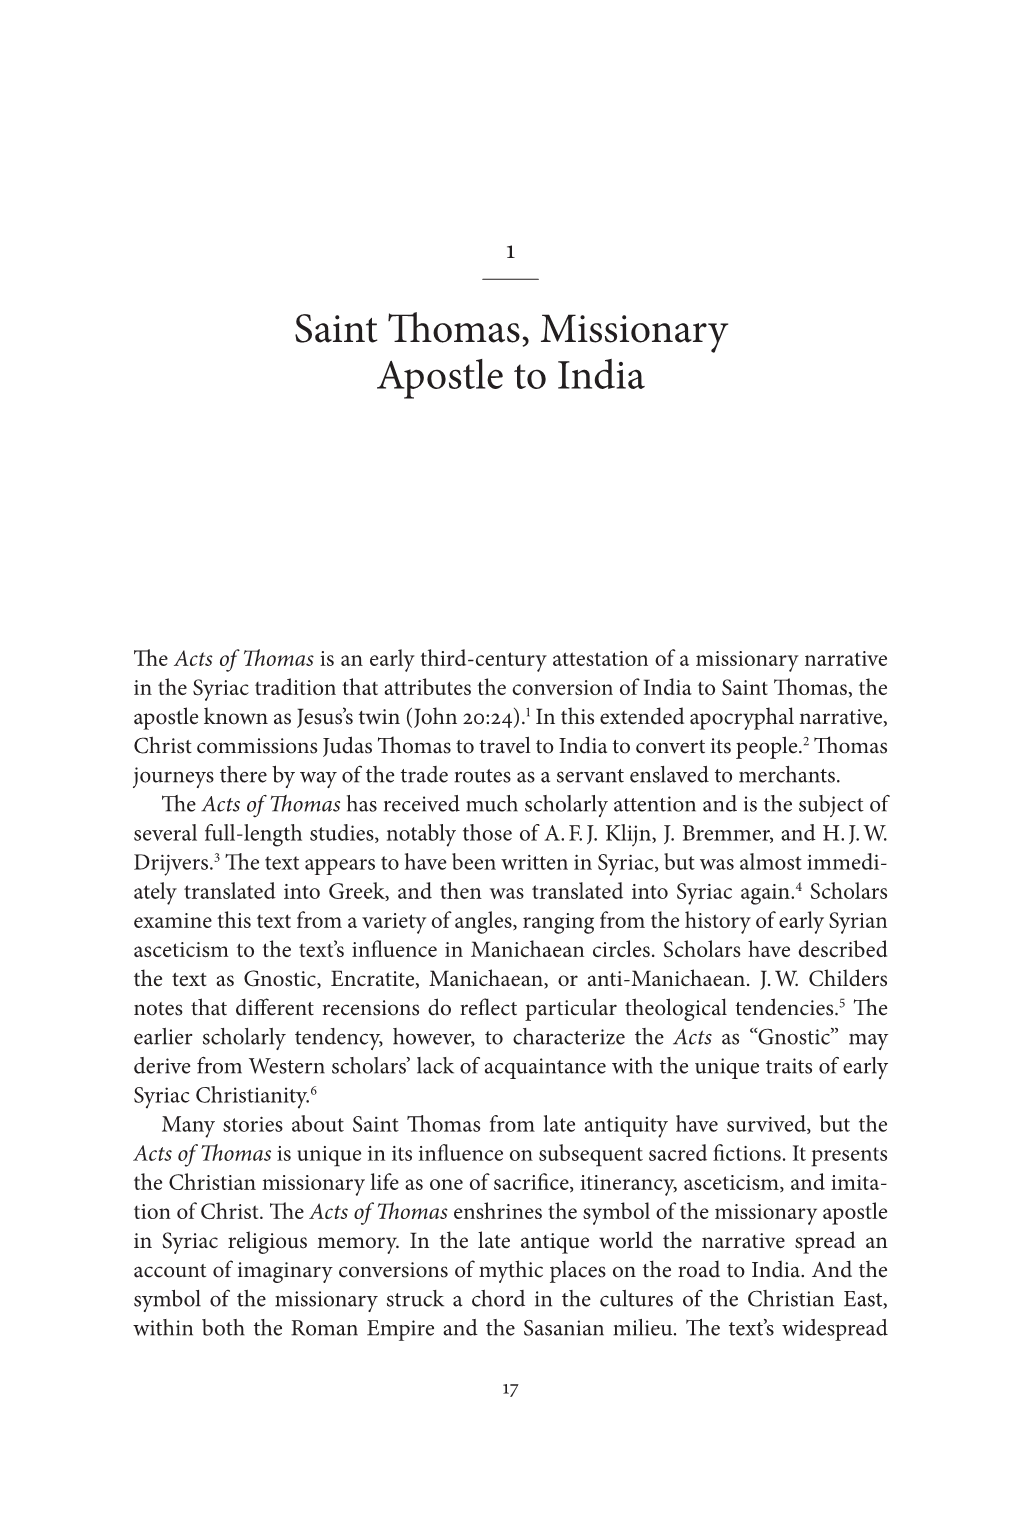 Saint Thomas, Missionary Apostle to India